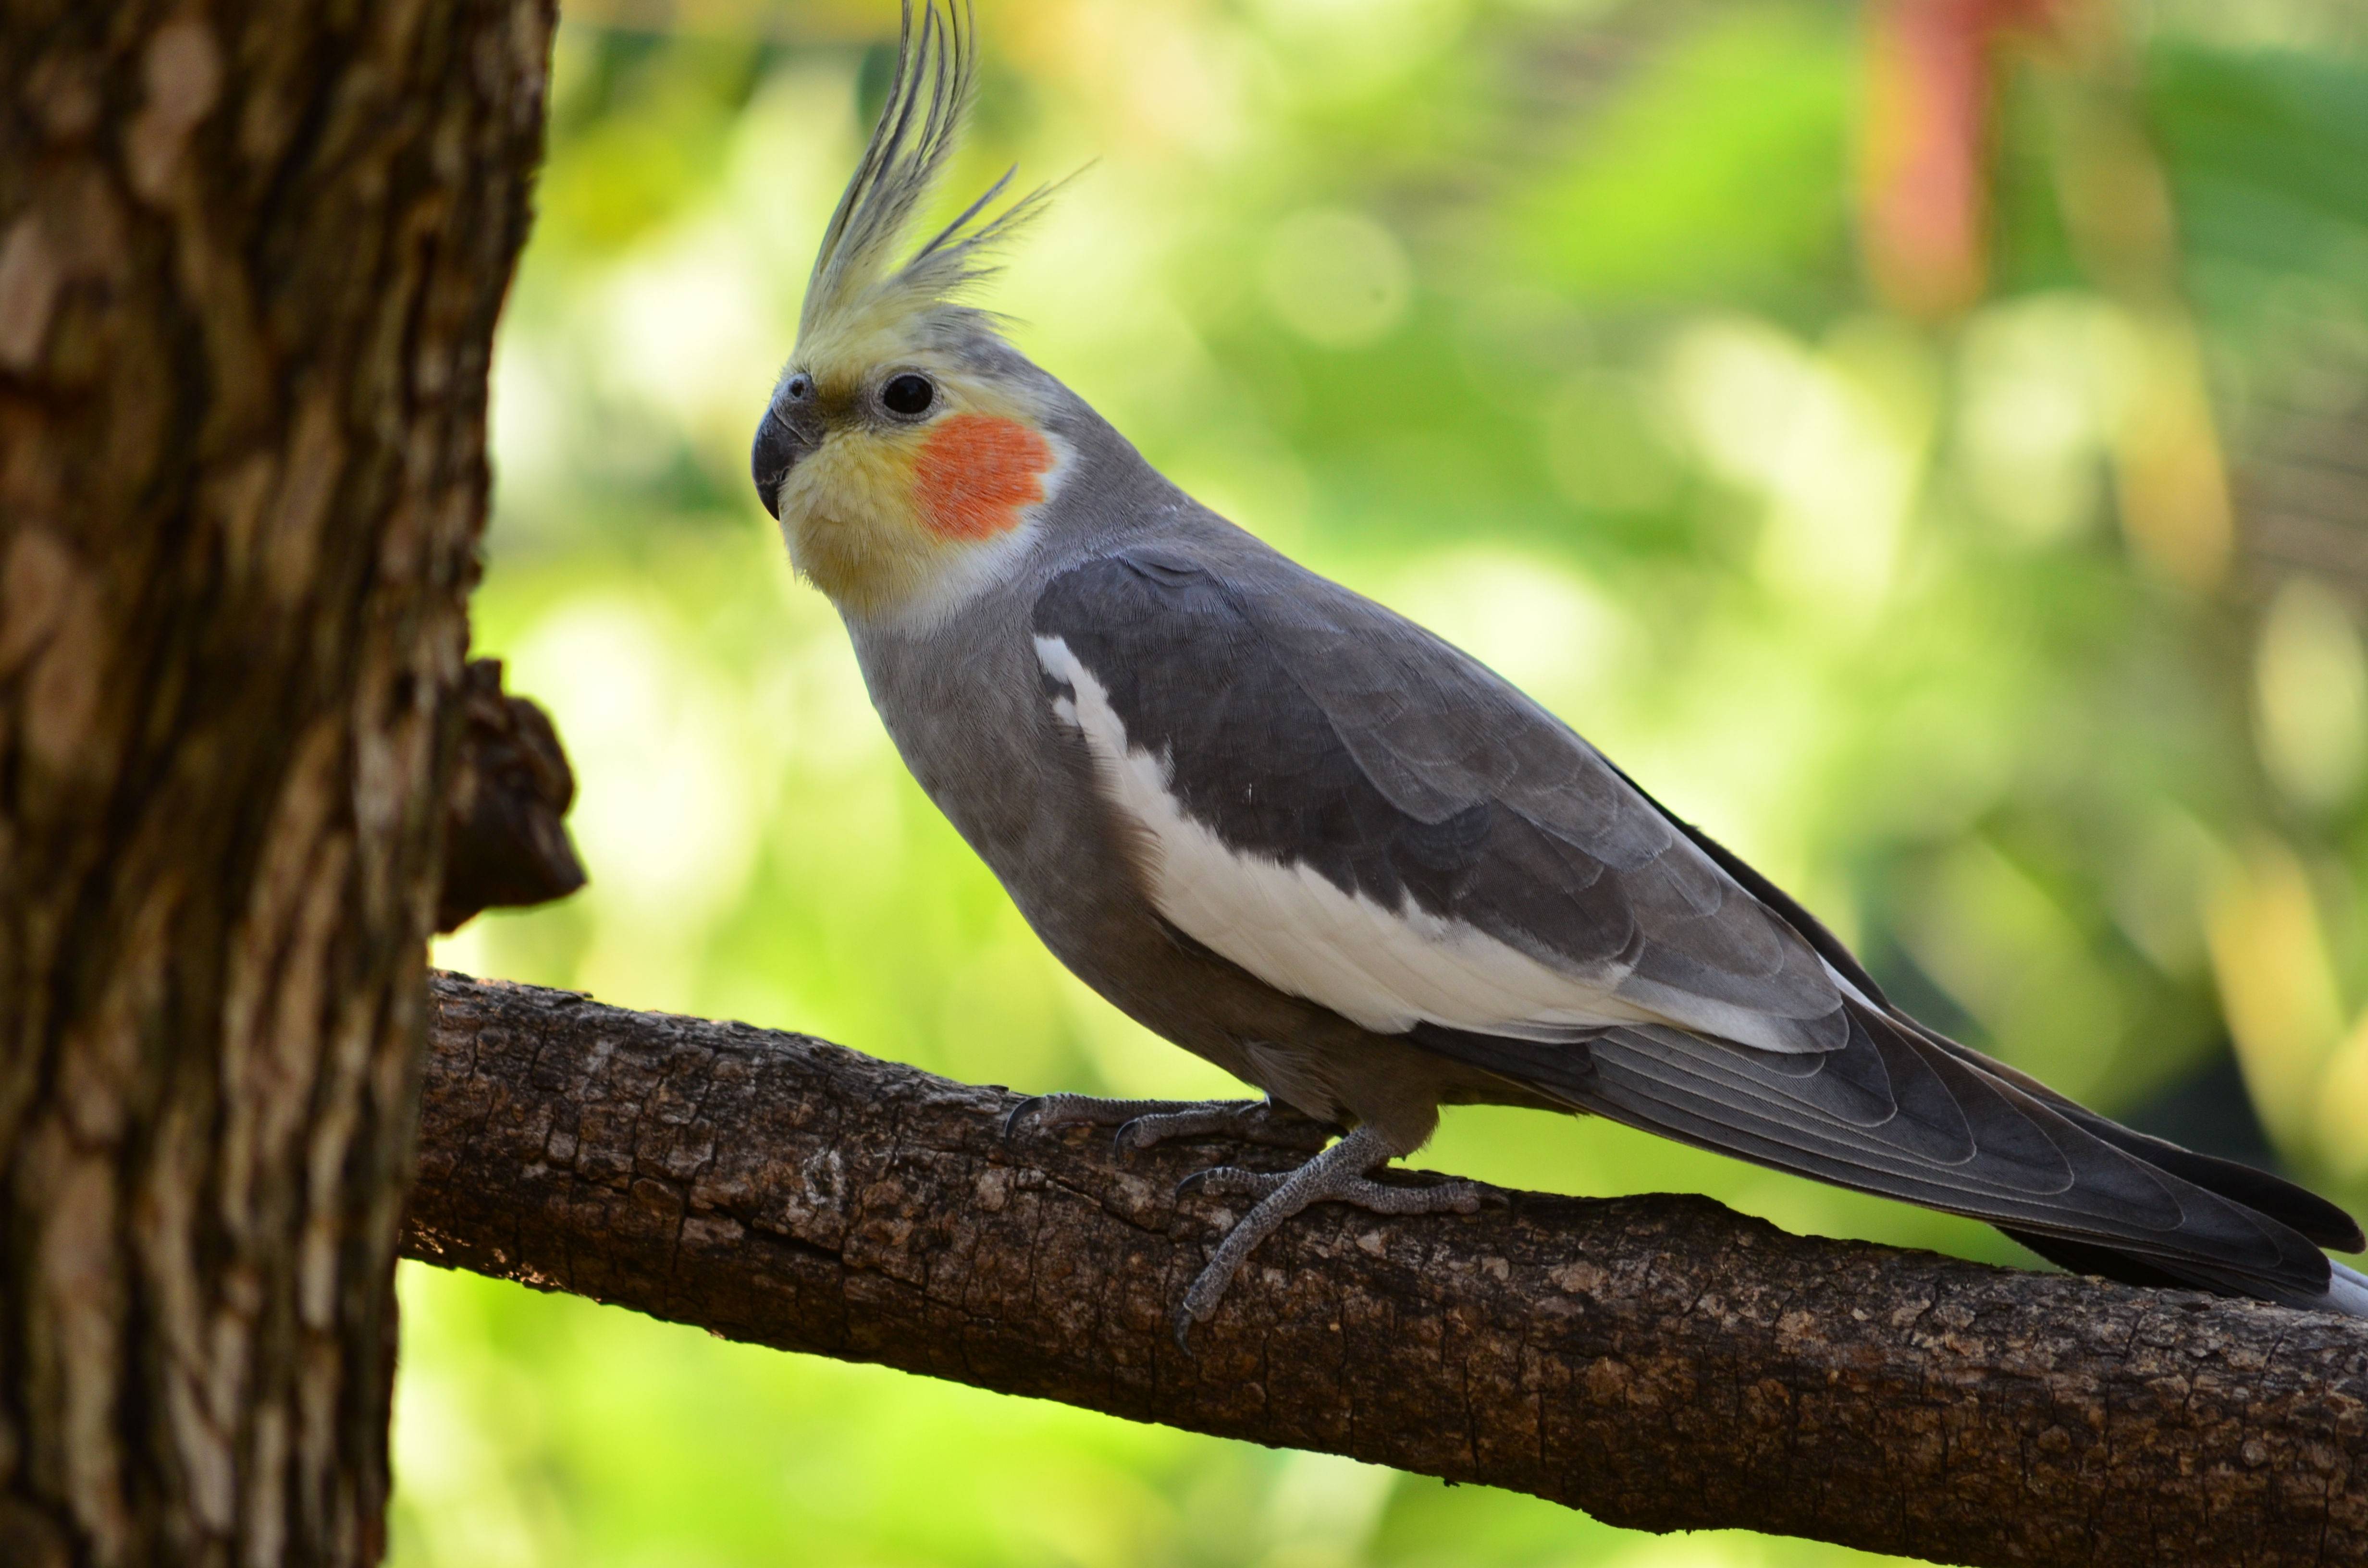 Попугай корелла: фото, описание, уход и содержание попугаев нимф